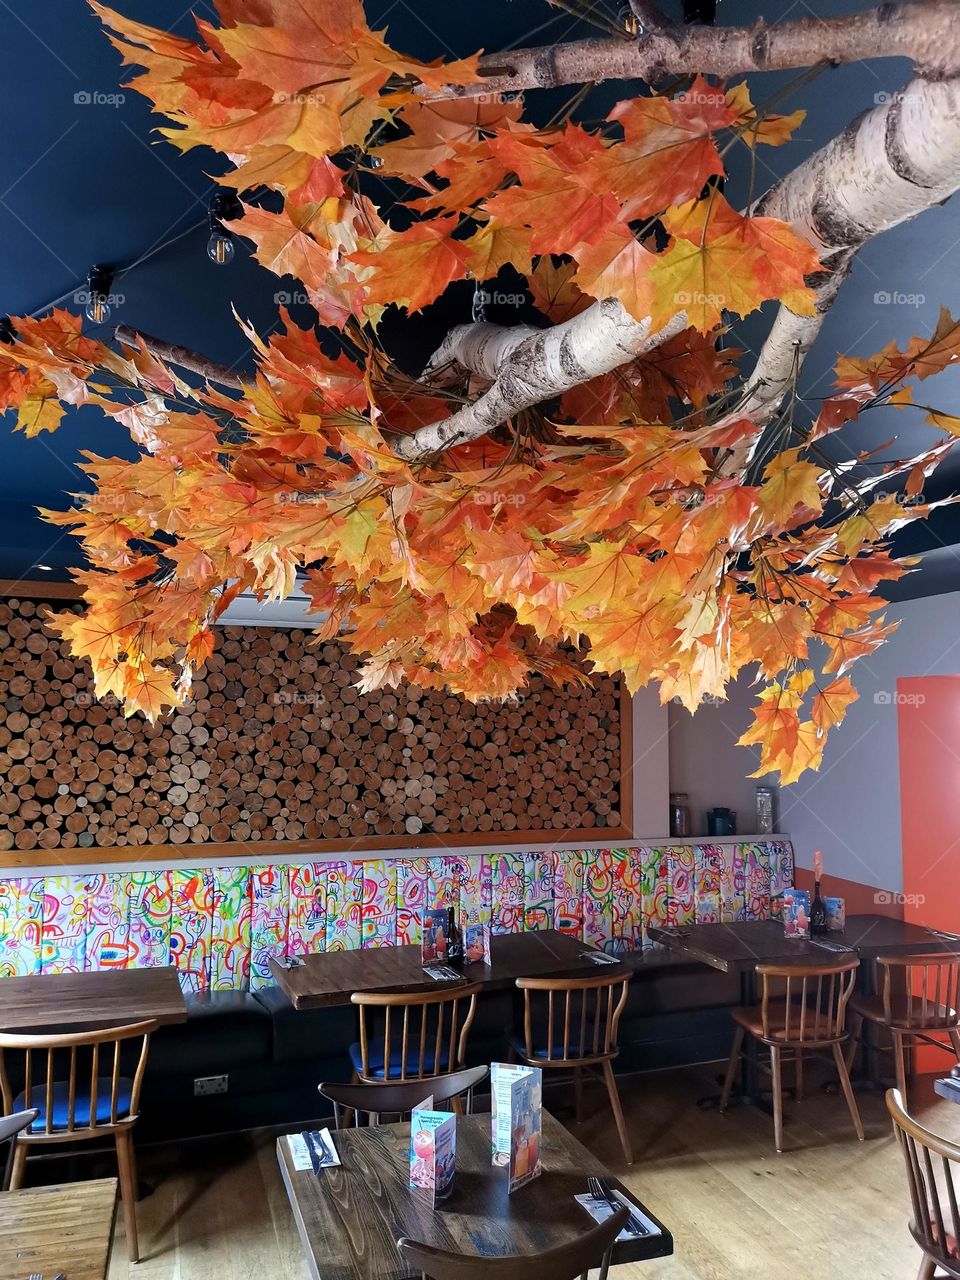 Unique Cafe interior design. Interesting design. Autumn vibes in interior.